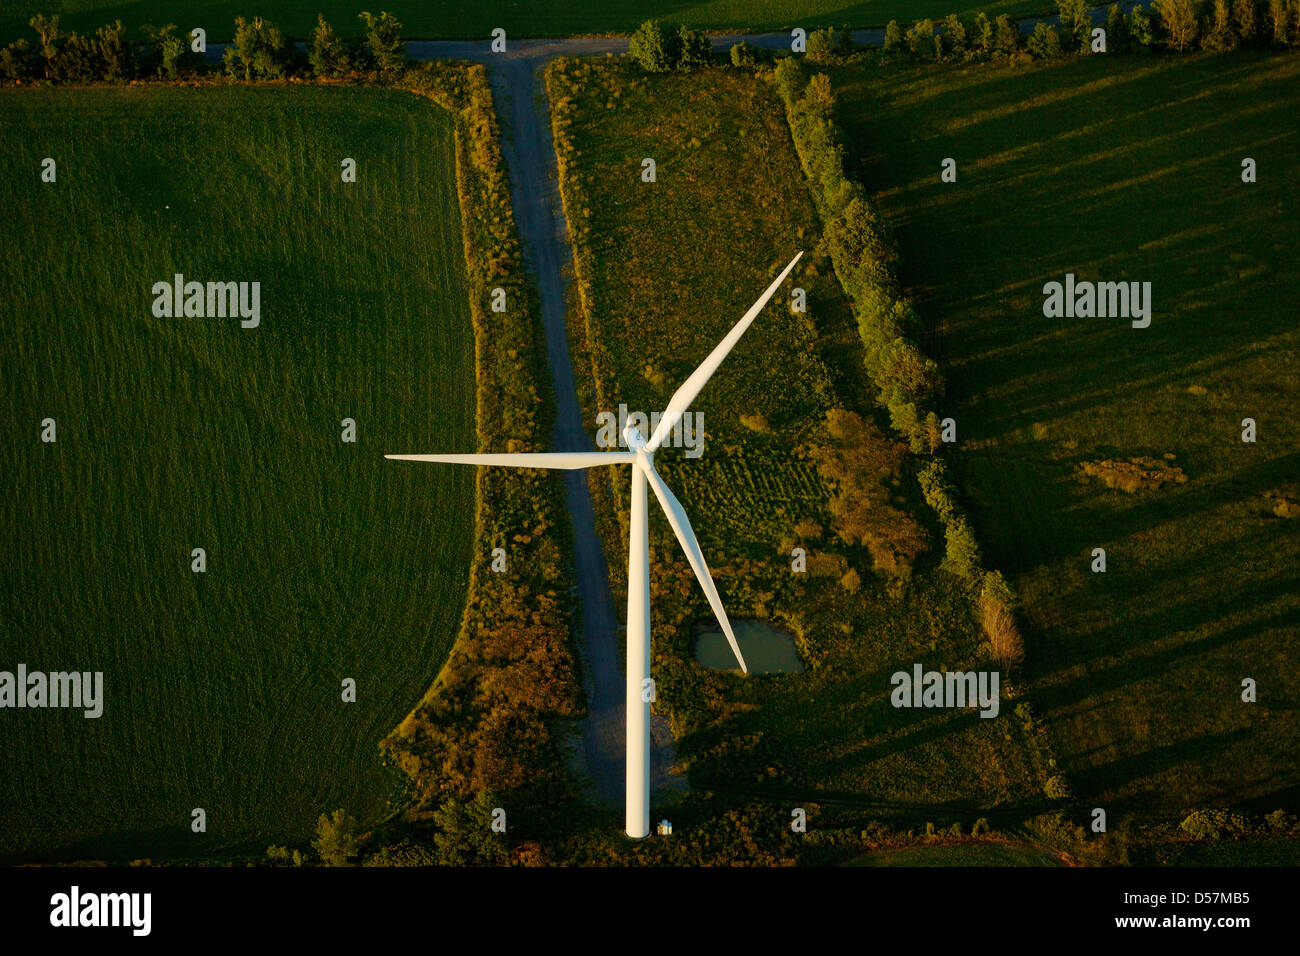 Vue aérienne d'une marque Siemens 11 éolienne avec route d'accès sur l'île Wolfe, près de Kingston, Ontario, Canada.. Banque D'Images